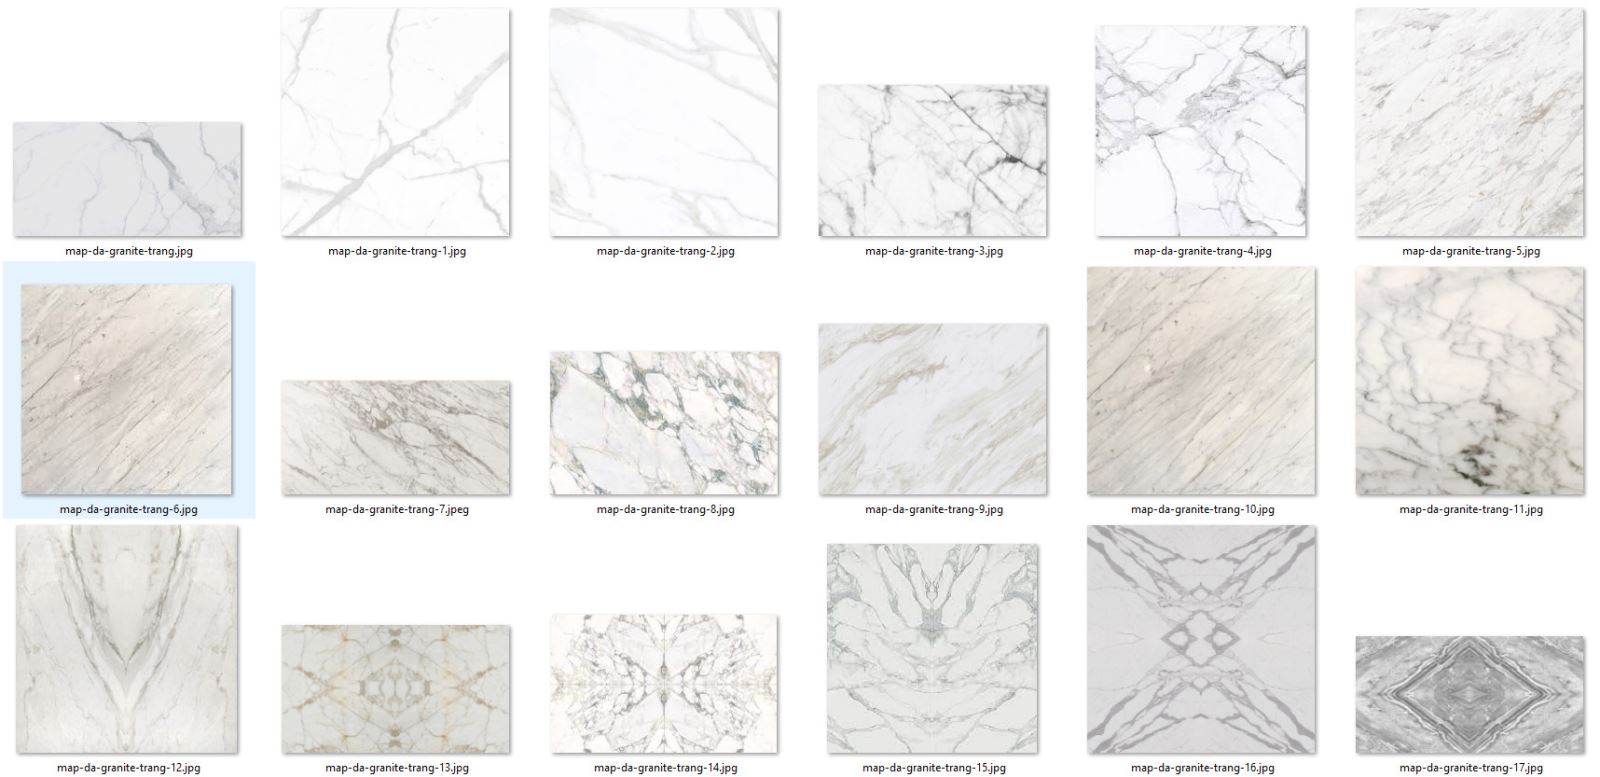 các map đá granite trắng